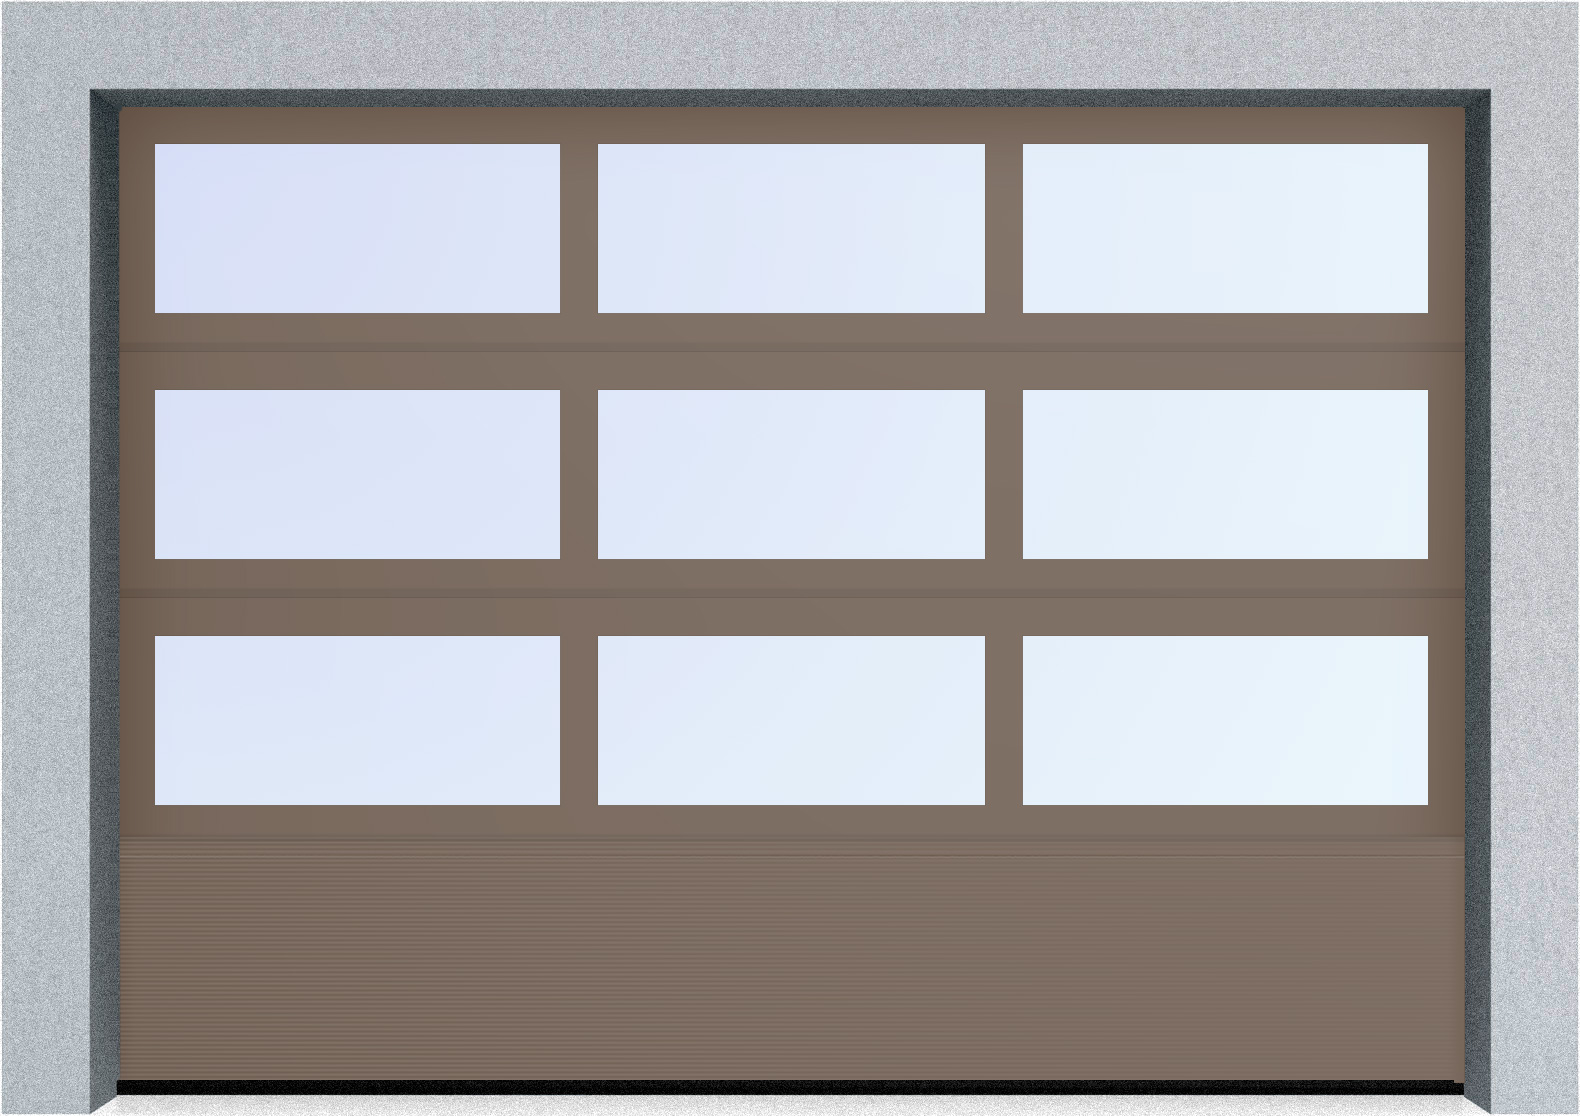  Автоматические секционные панорамные ворота серии AluTrend с комбинированным типом полотна (АЛПС) 5375х4500 S-гофр, Микроволна стандартные цвета, фото 11 